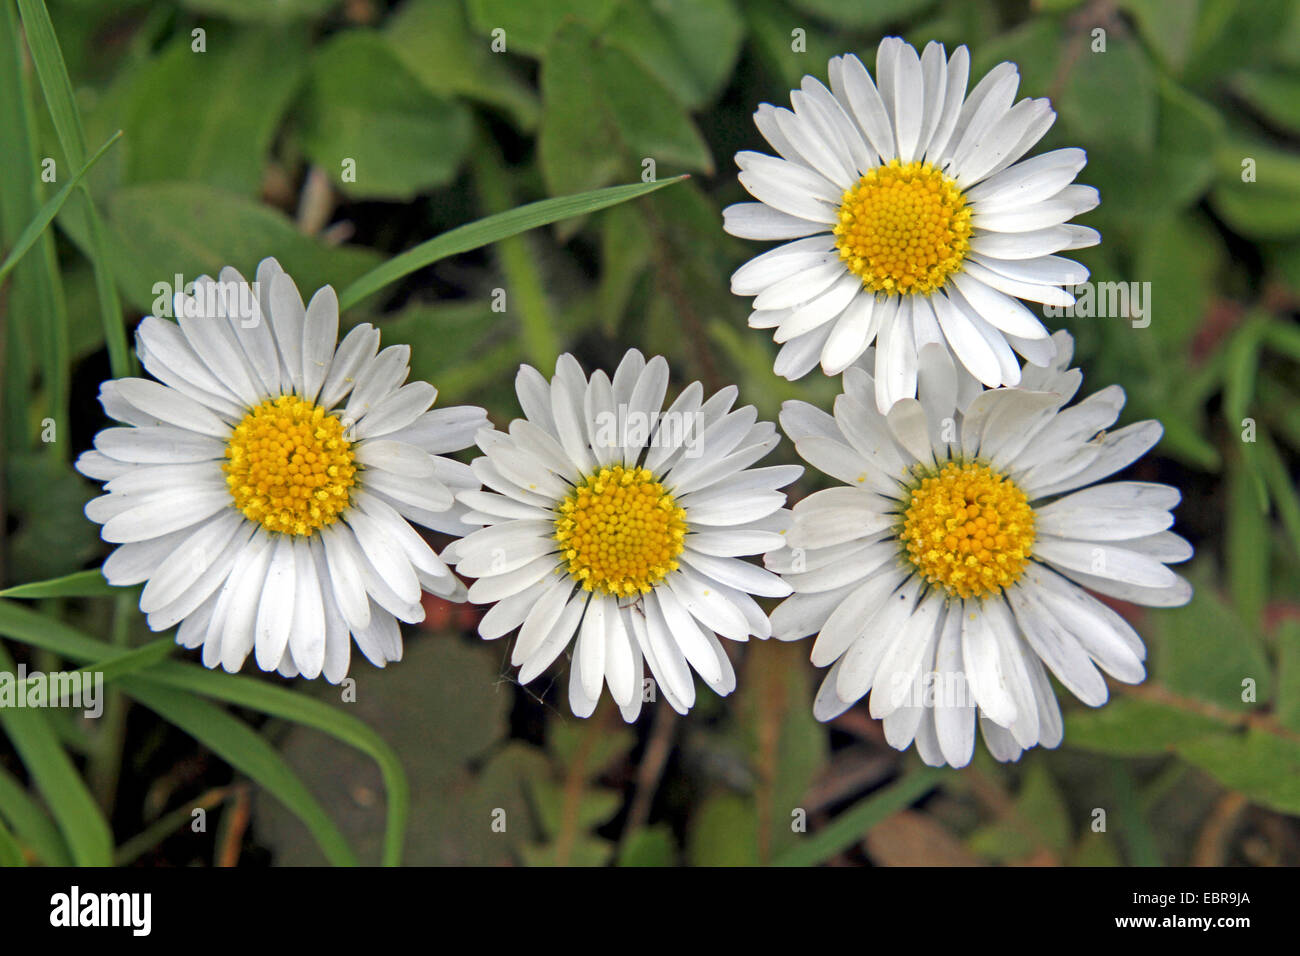 Daisy comune, prato daisy, inglese daisy (Bellis perennis), che fiorisce in un prato, Germania Foto Stock